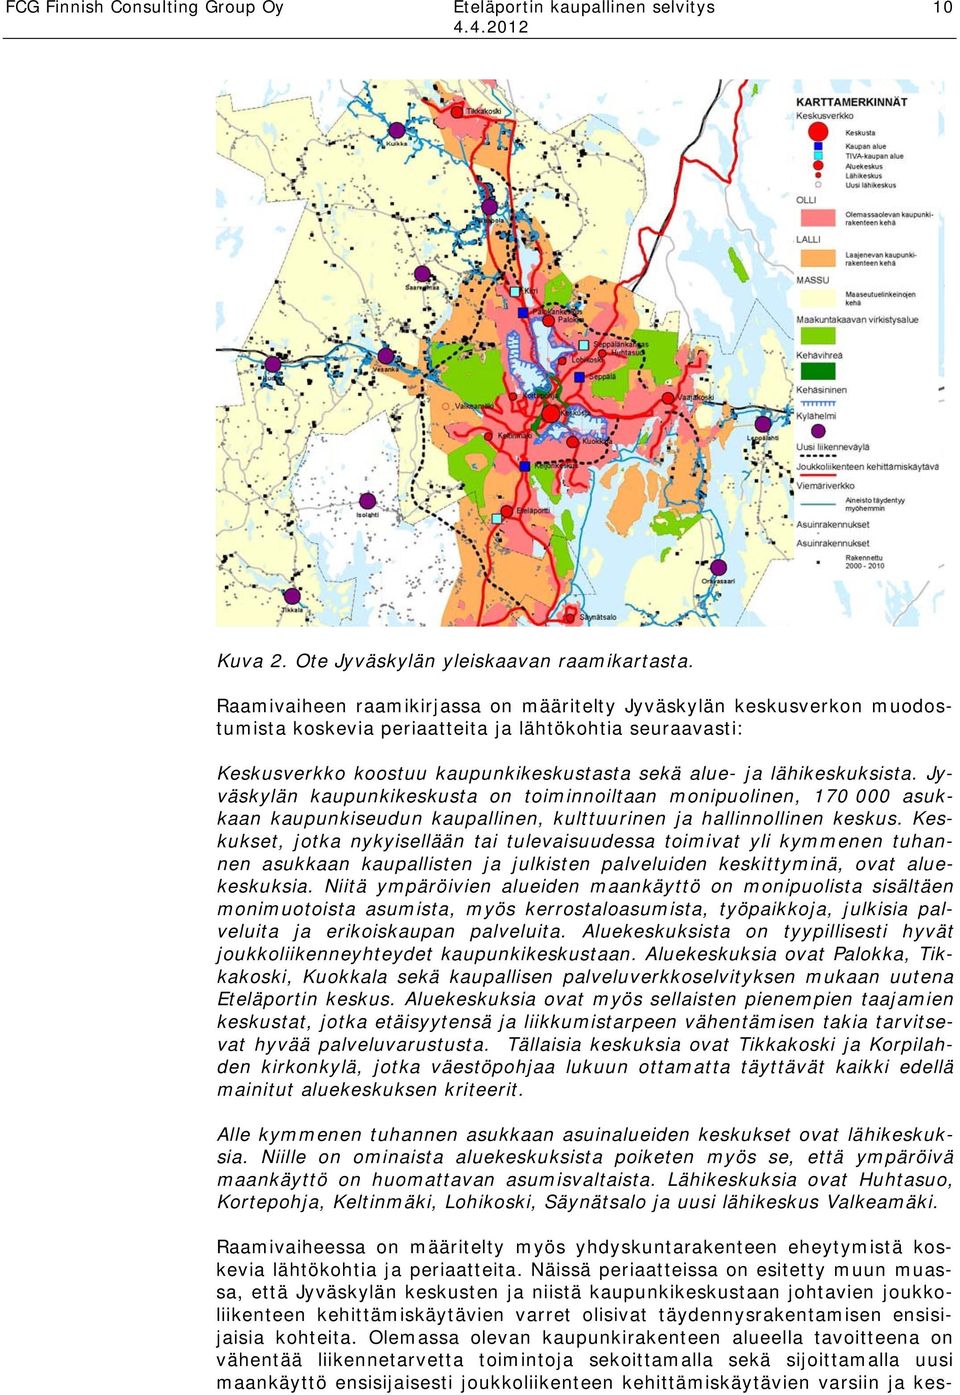 Jyväskylän kaupunkikeskusta on toiminnoiltaan monipuolinen, 170 000 asukkaan kaupunkiseudun kaupallinen, kulttuurinen ja hallinnollinen keskus.